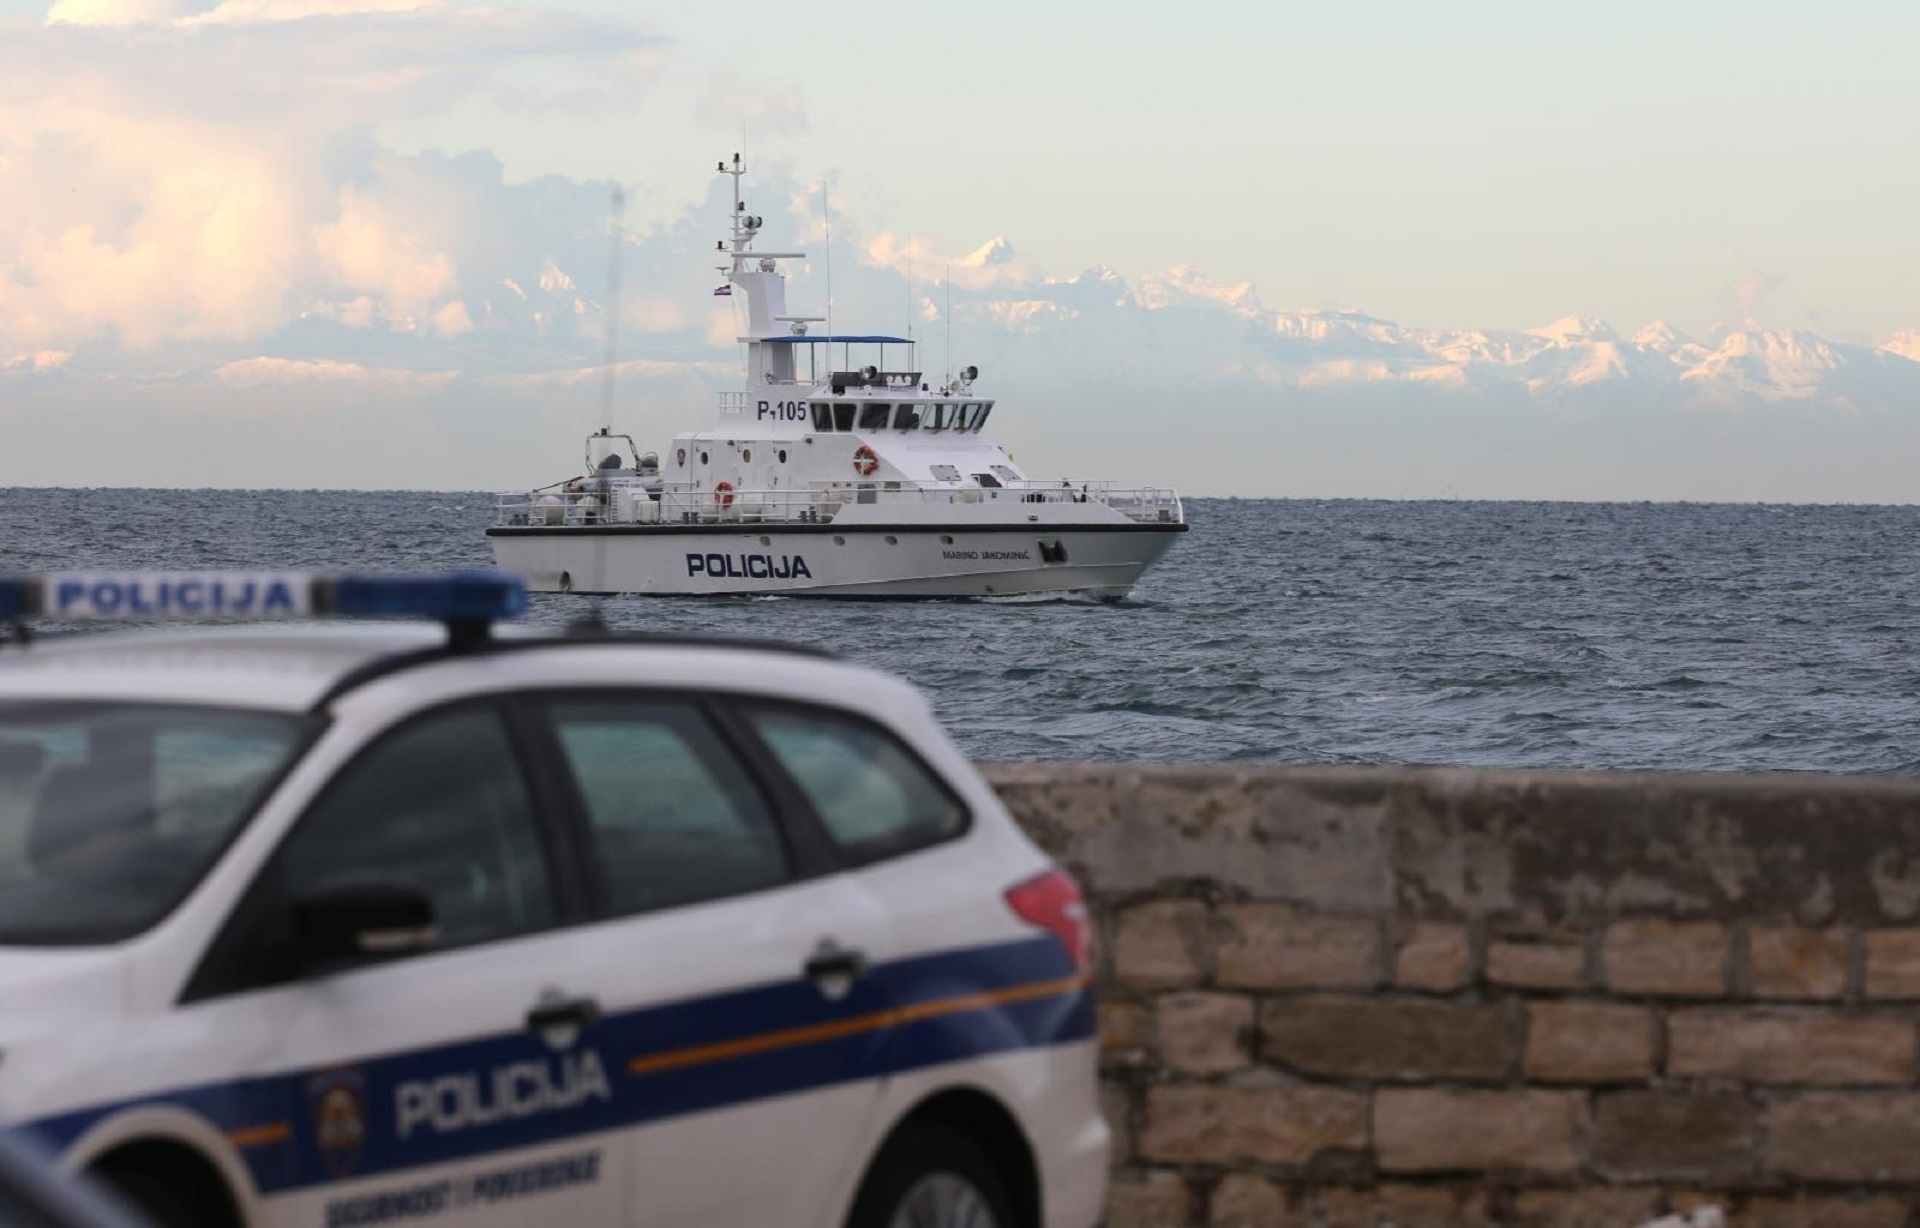 29.12.2017., Savudrija - Ribari i policija na moru uz granicu sa Slovenijom. 
Photo: Goran Kovacic/PIXSELL